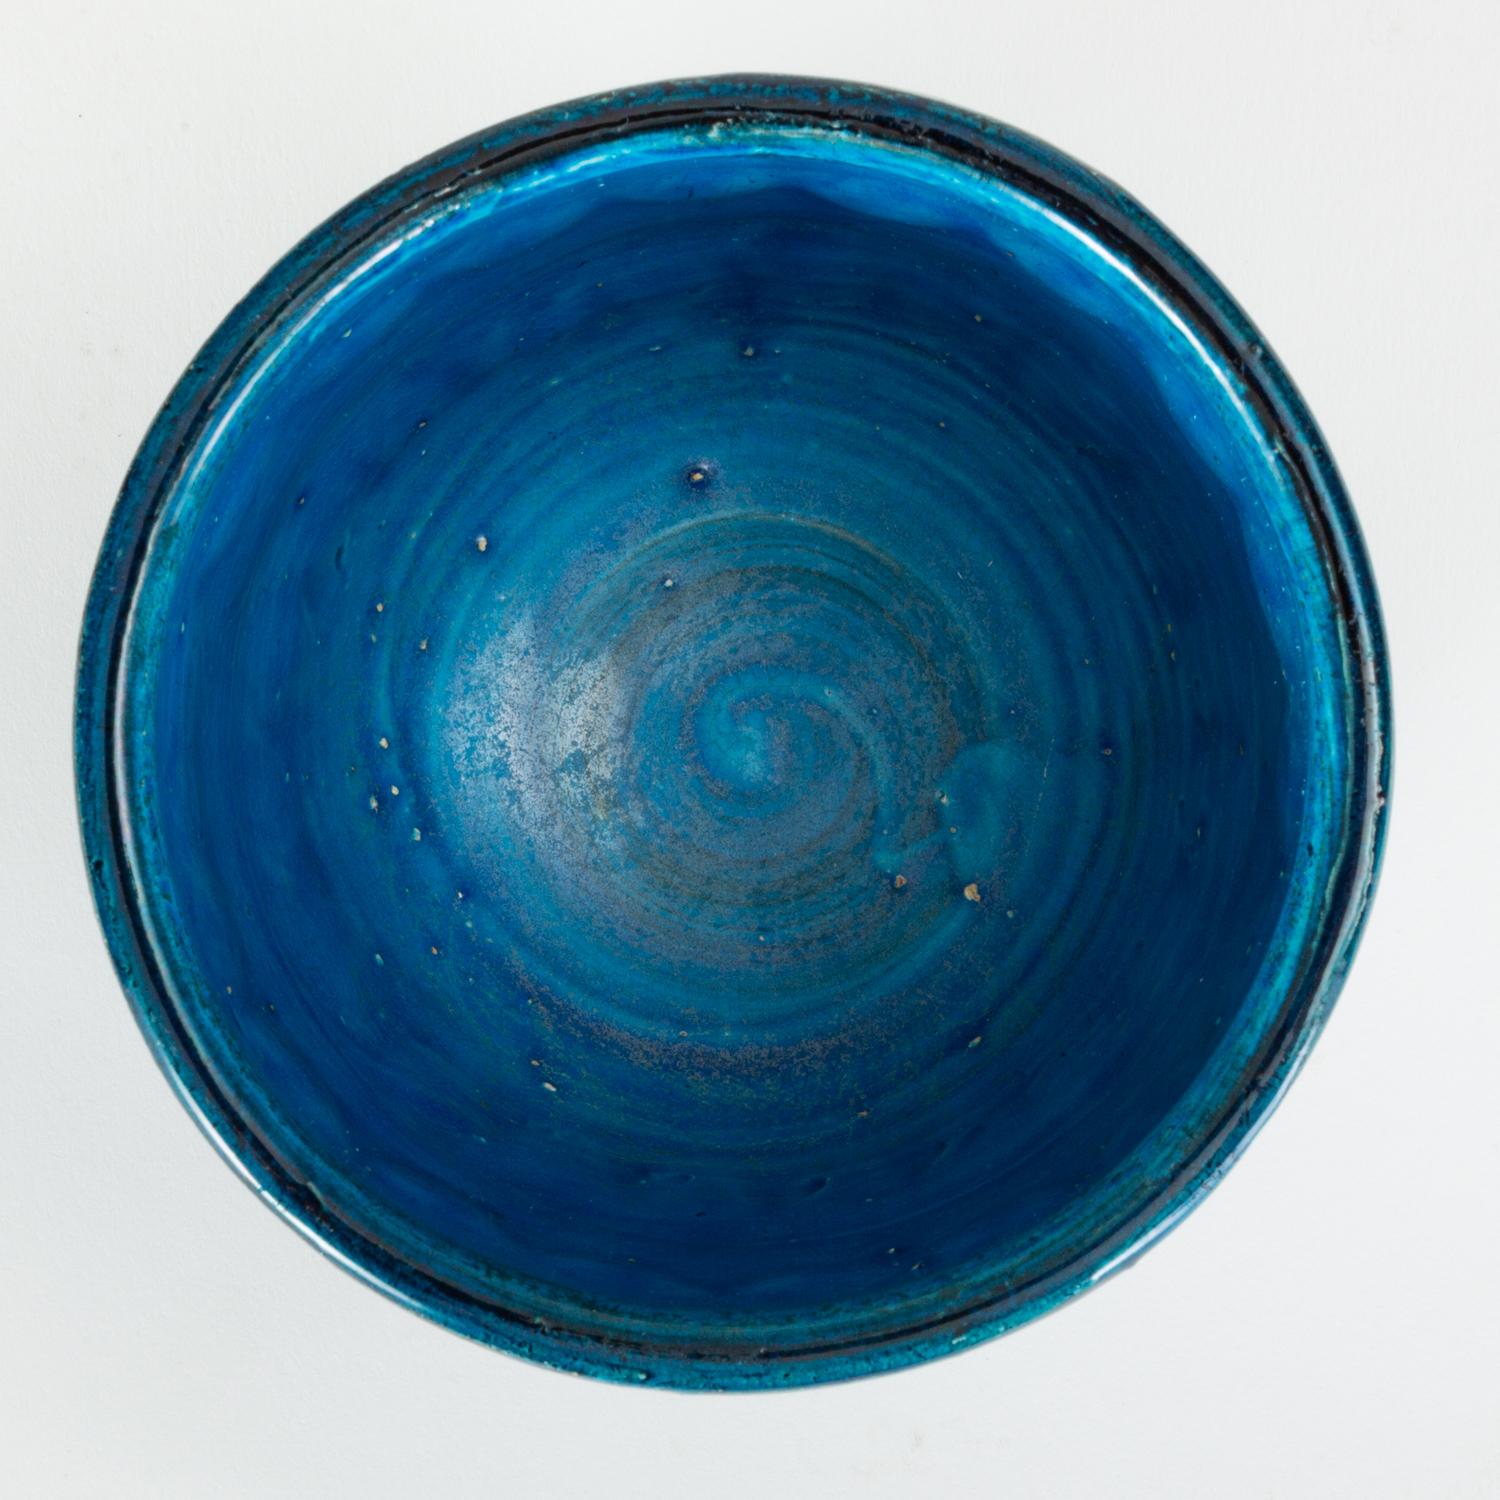 Small “Rimini Blu” Bowl or Vase by Aldo Londi for Bitossi 1